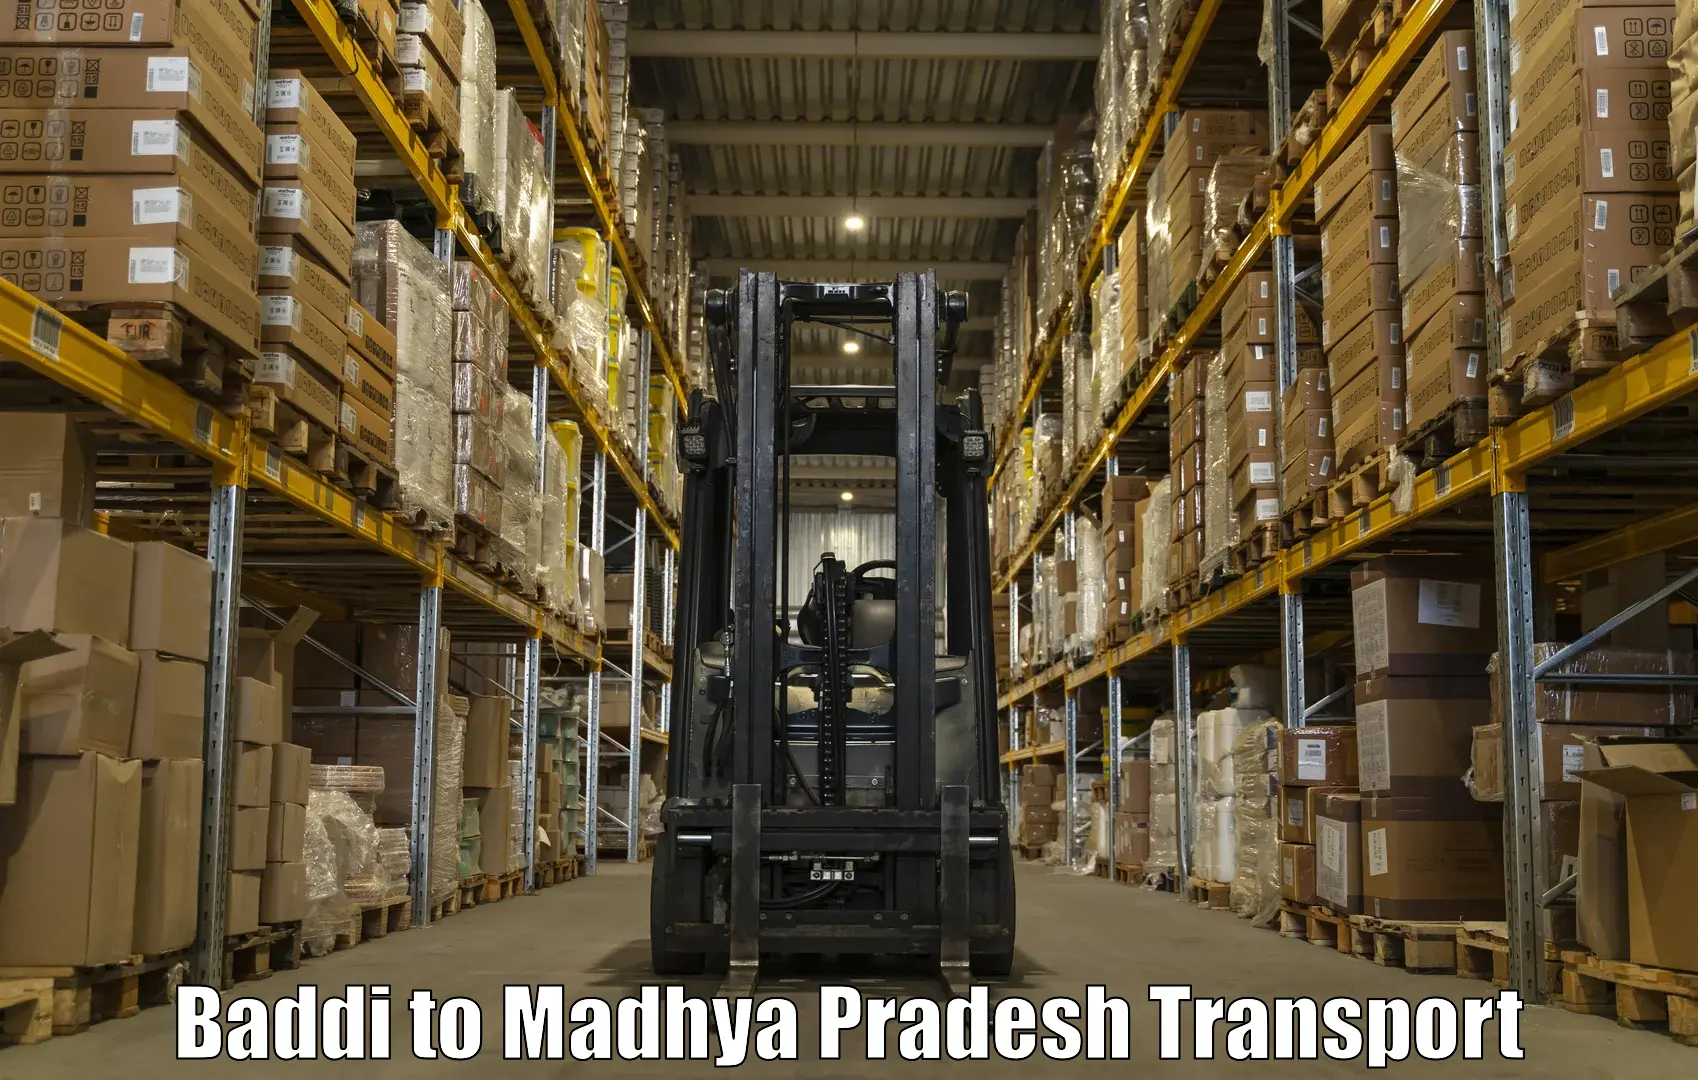 Online transport service Baddi to Madhya Pradesh